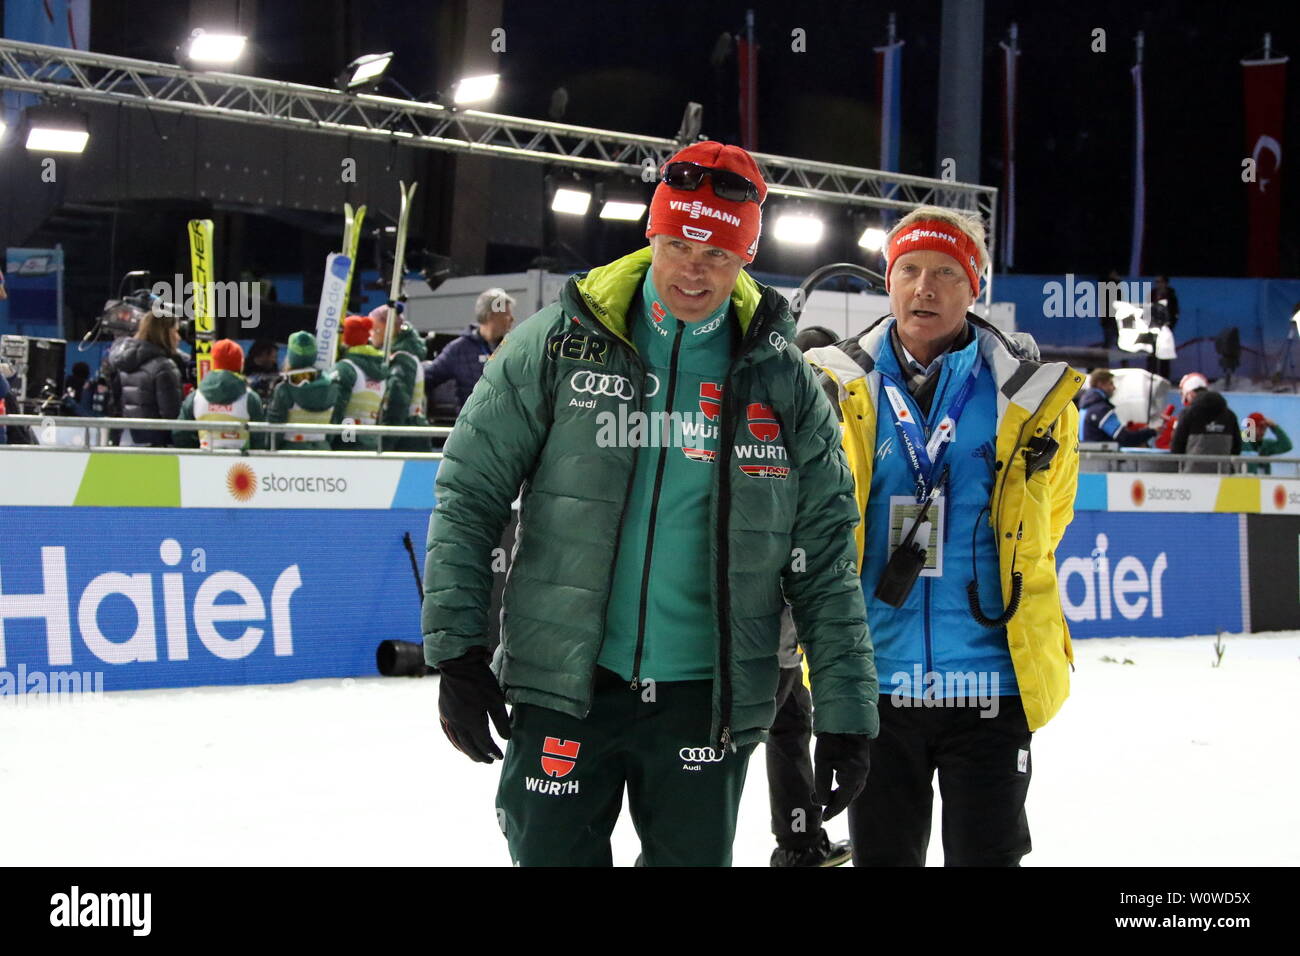 Frauen Bundestrainer Andreas Bauer (Oberstdorf) und Walter Hofer (FIS-Race-Direktor) auf dem Weg zur Siegerehrung für das Mixed Team Skispringen, FIS Nordische Ski-WM 2019 in Seefeld Stock Photo